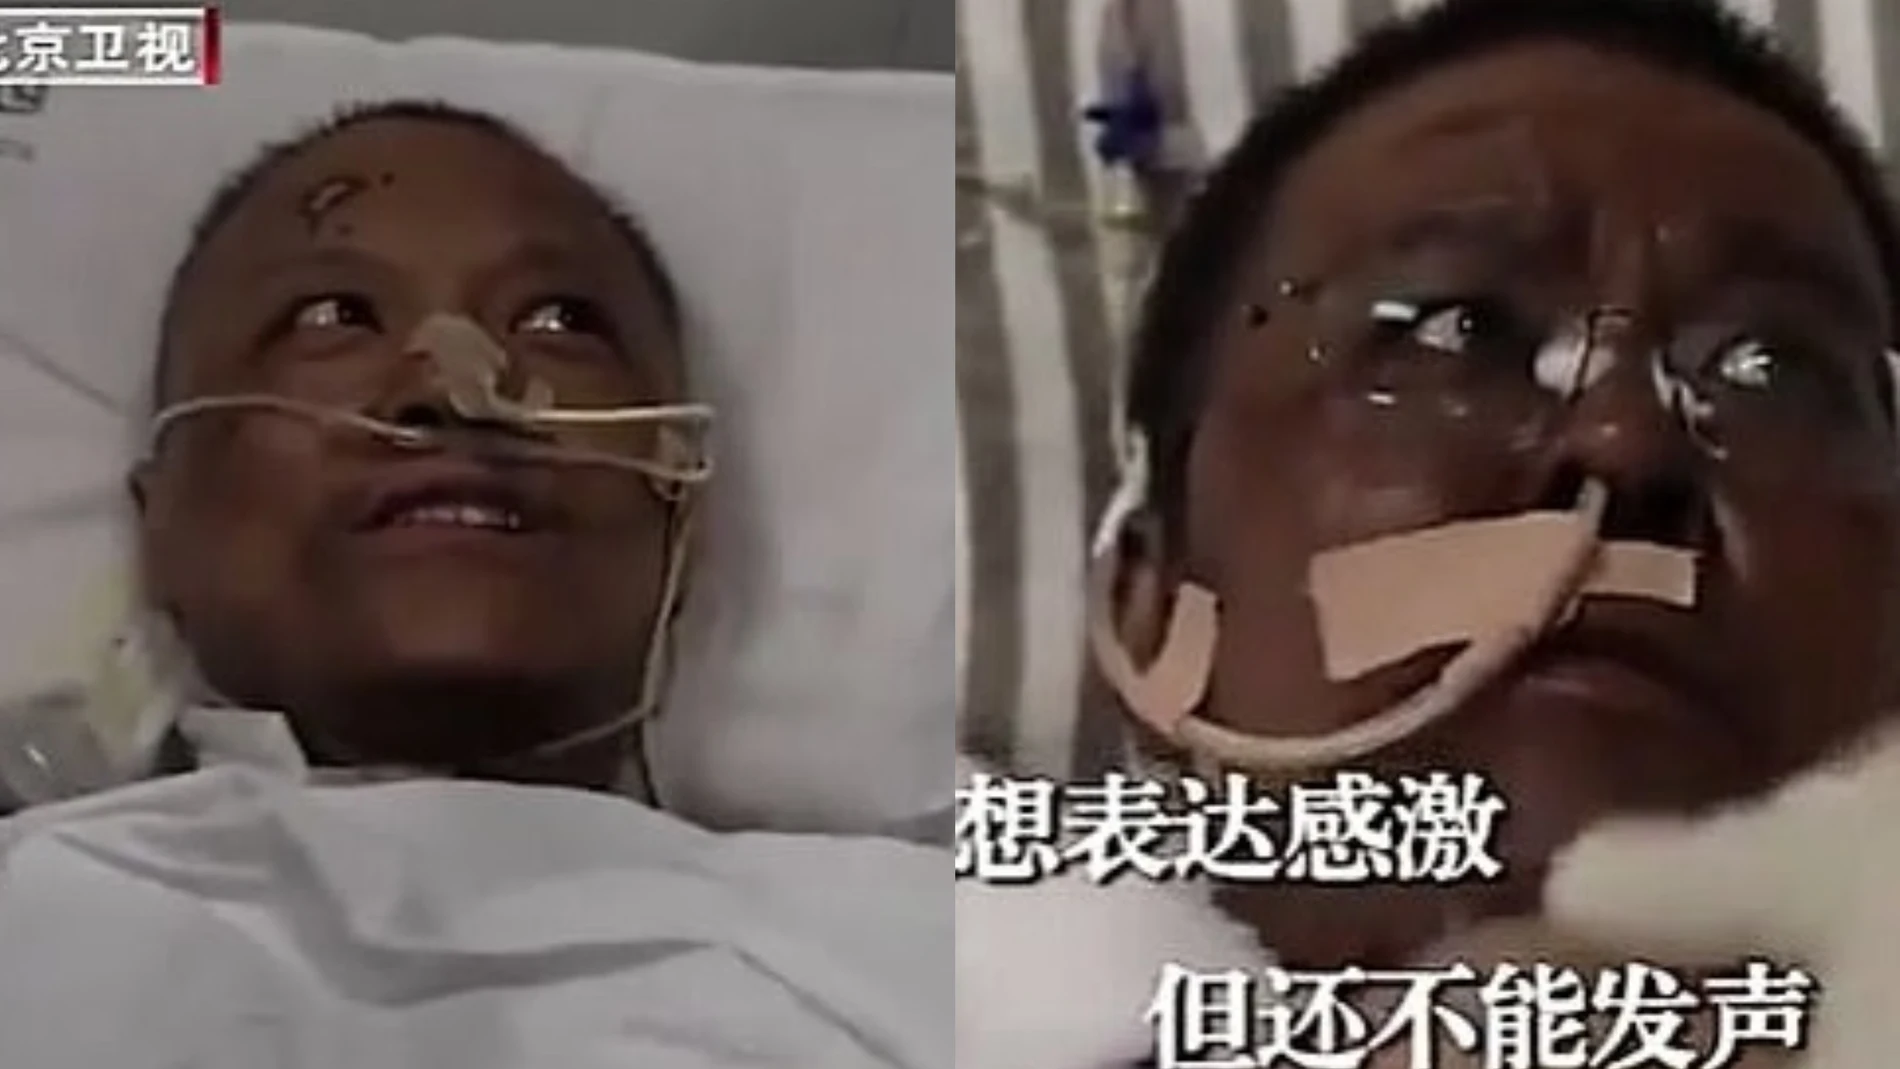 El doctor Yi Fan y el doctor Hu Weifeng, tras recibir el tratamiento